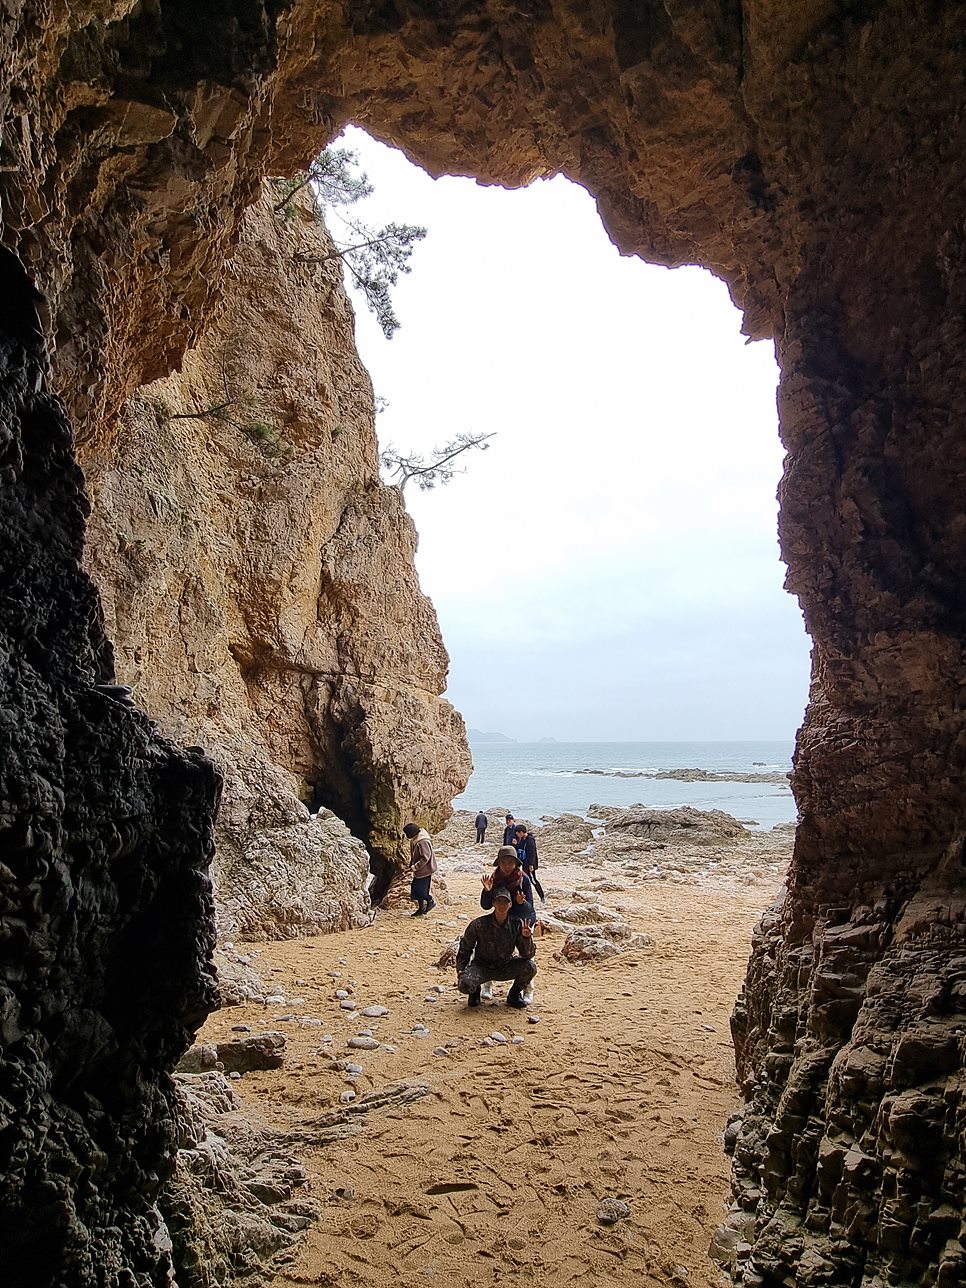 [태안해안국립공원] 파도리해변, 해식동굴의 매력을 찾아서